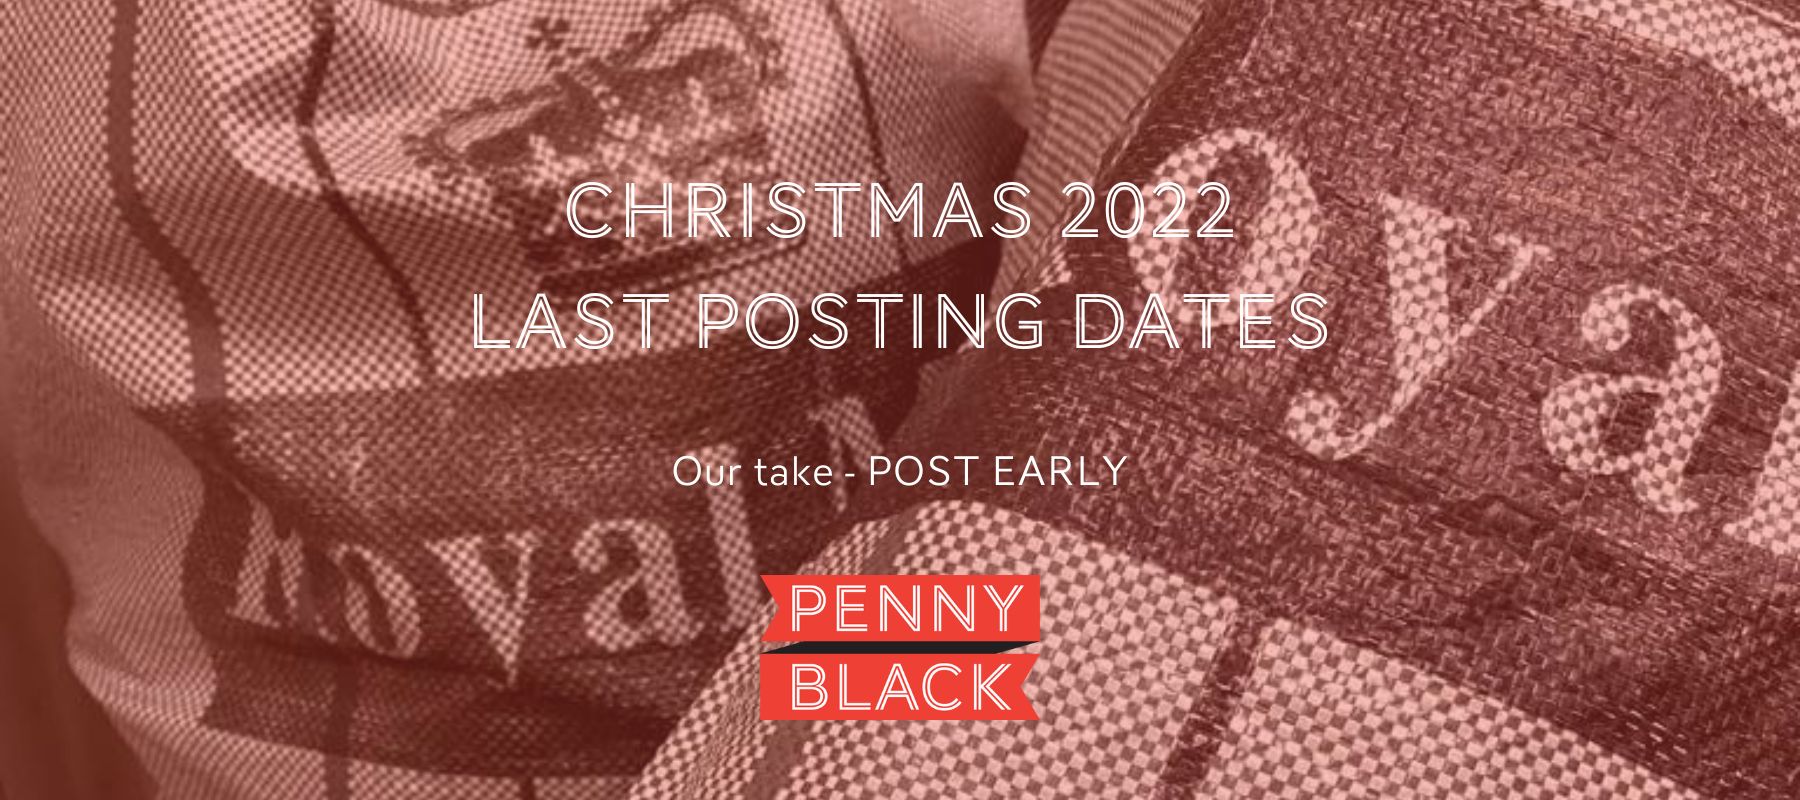 Last Posting Dates in UK 2022 - Penny Black